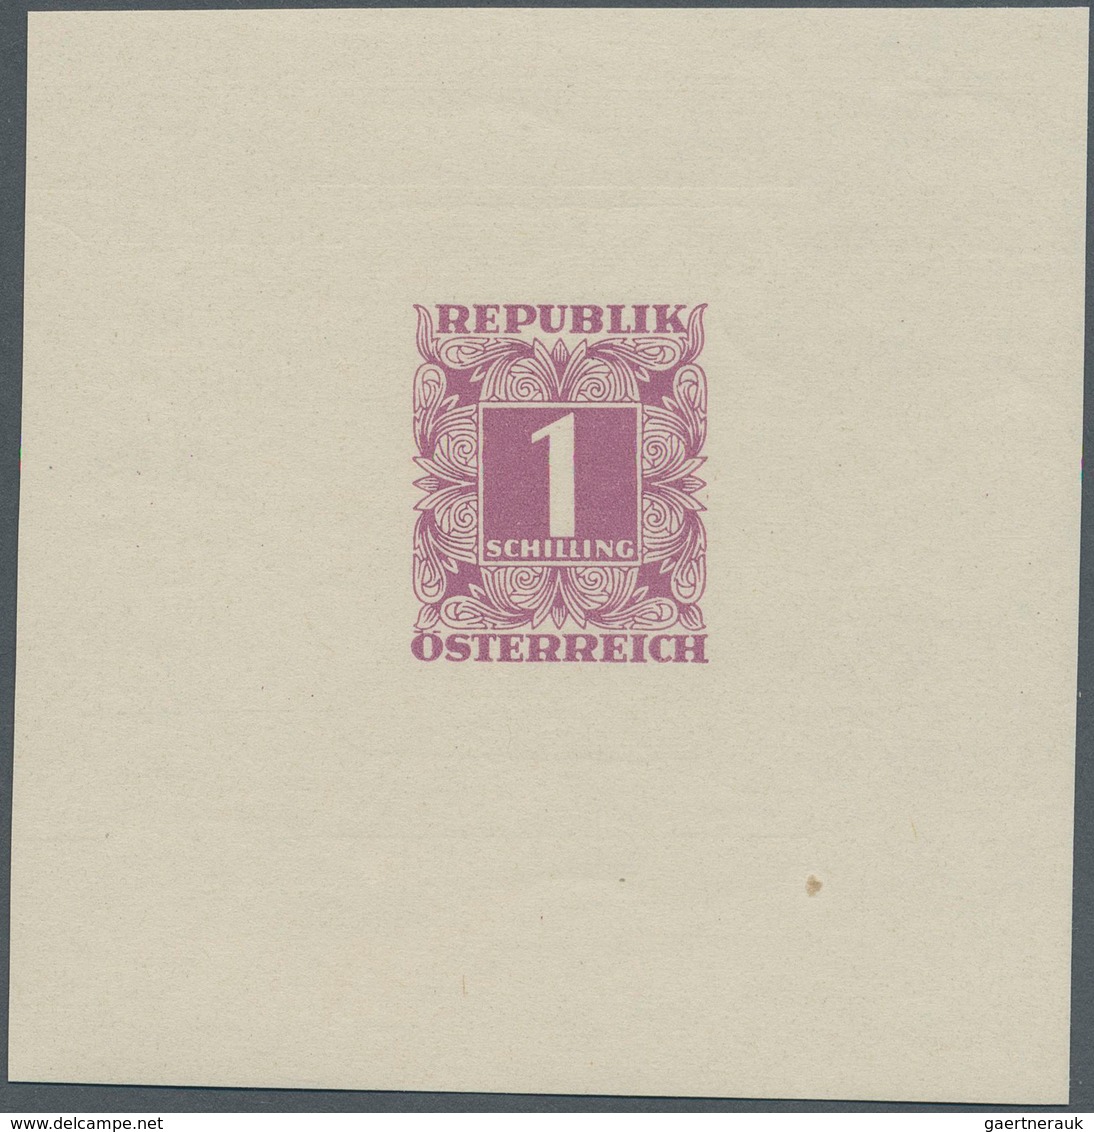 Österreich - Portomarken: 1949, Ziffern 1 Sch. Violett, Einzelabzug Im Kleinbogenformat Auf Gummiert - Postage Due